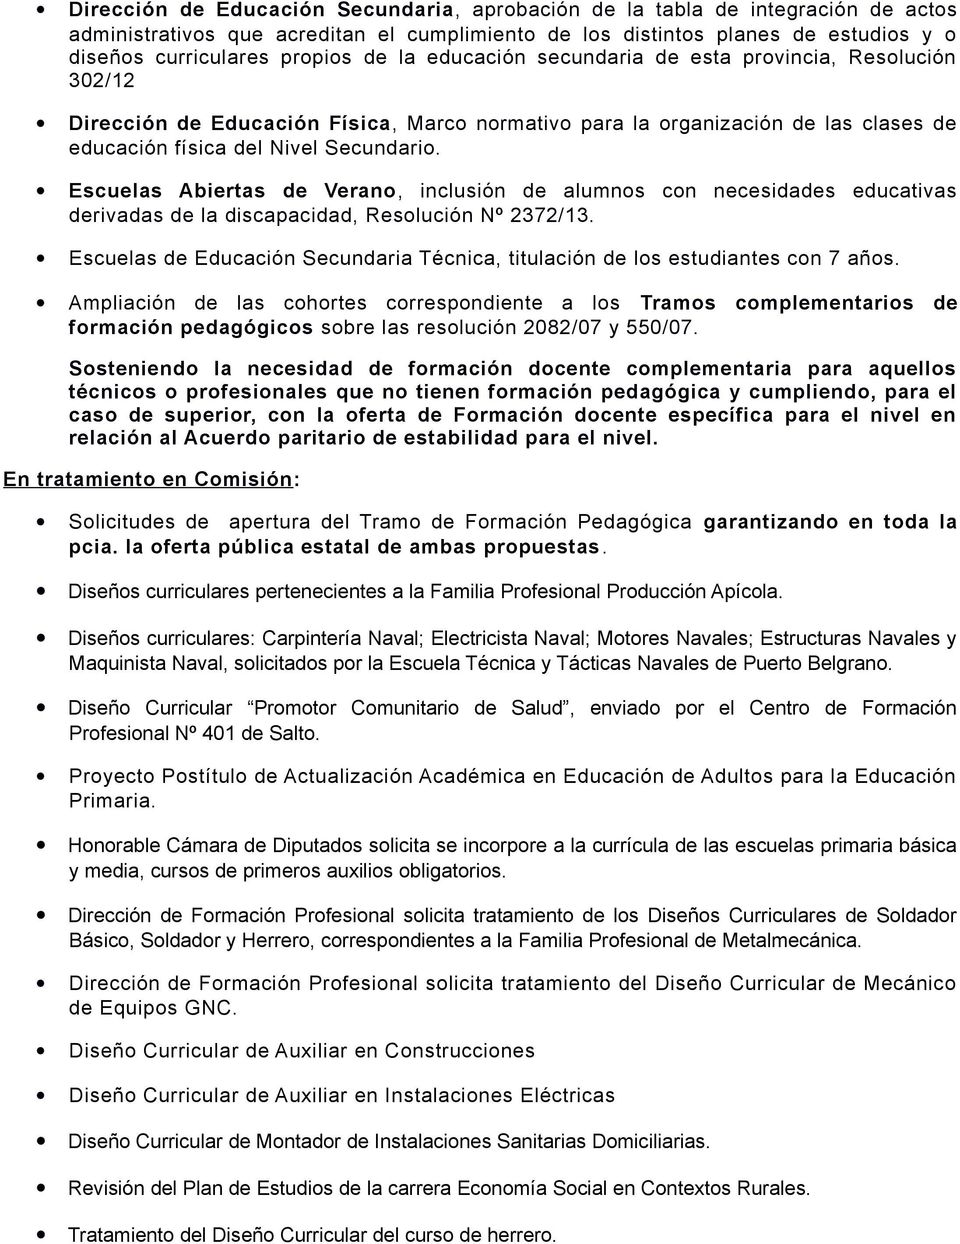 Escuelas Abiertas de Verano, inclusión de alumnos con necesidades educativas derivadas de la discapacidad, Resolución Nº 2372/13.